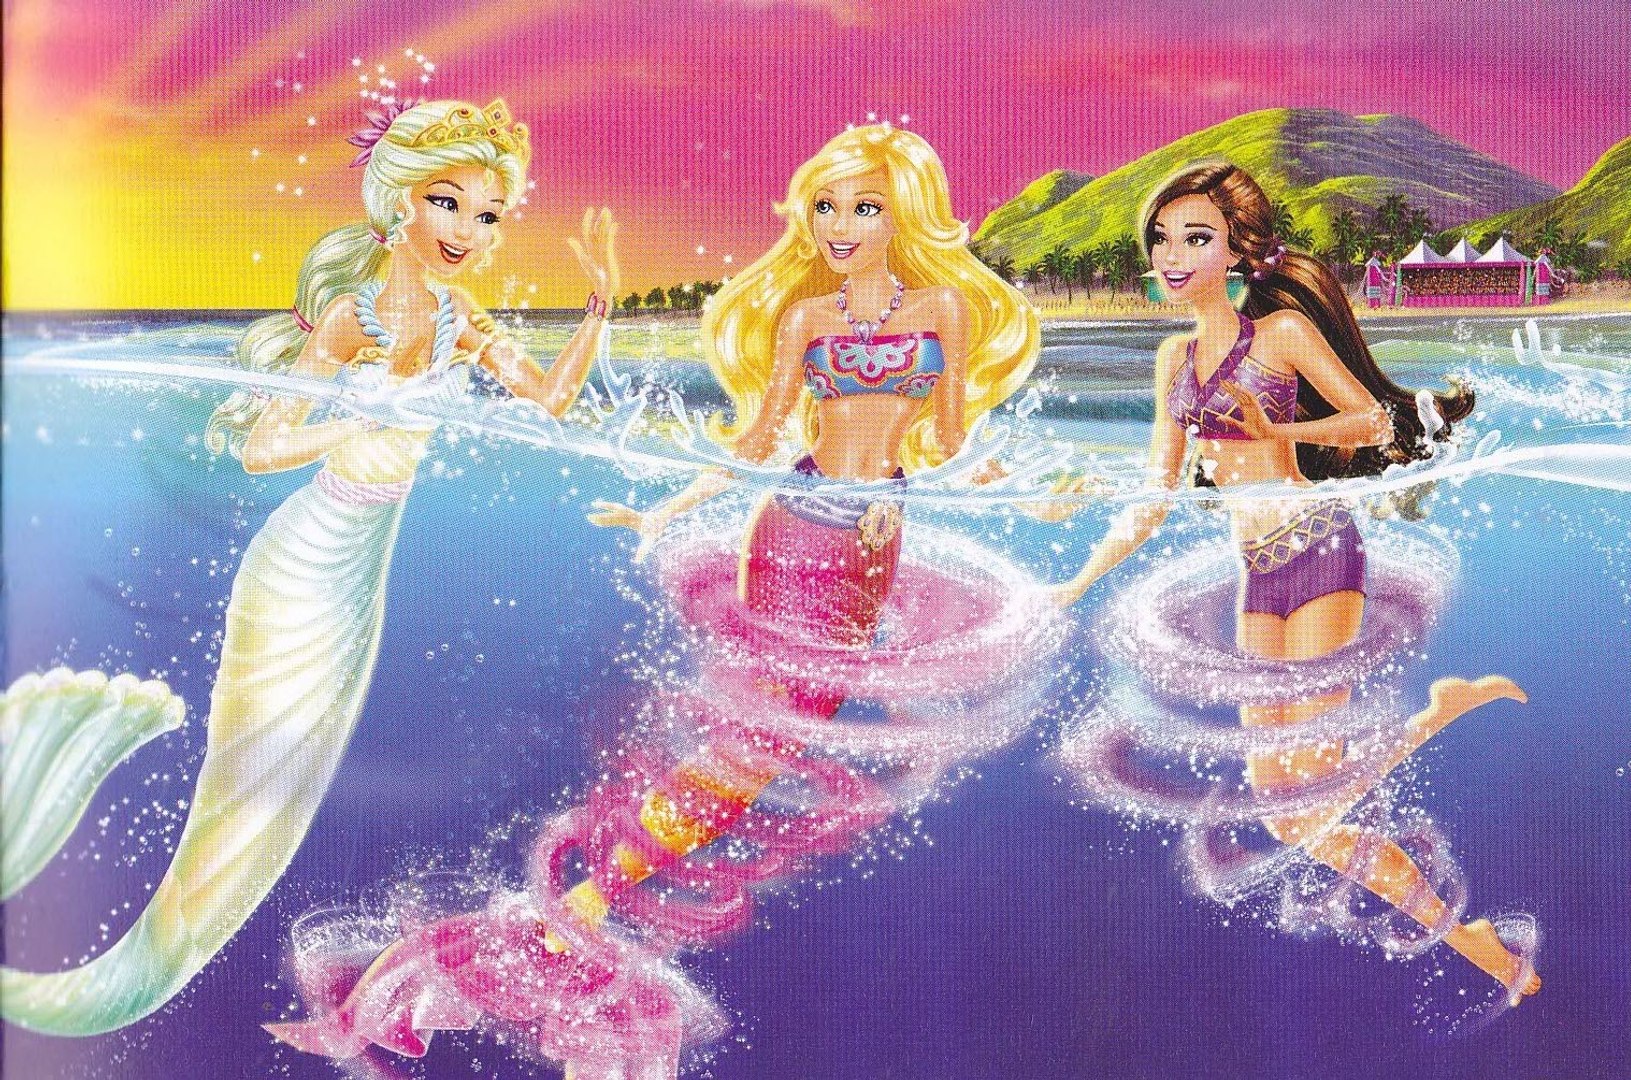 barbie in a mermaid tale 2